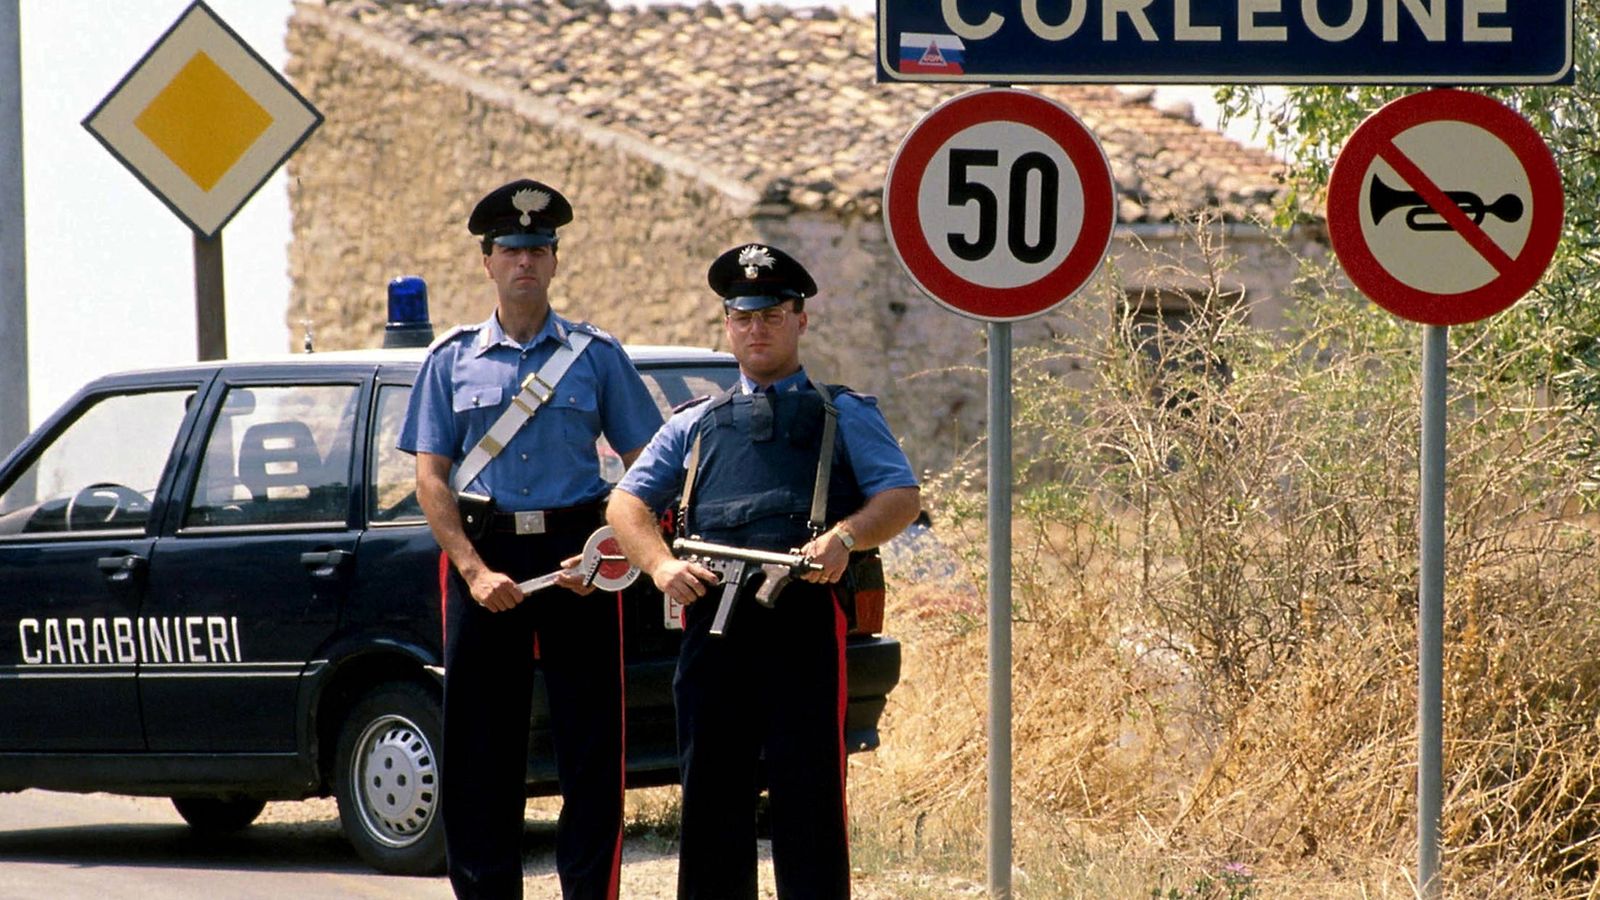 Foto: Carabinieros italianos montan guardia en la localidad de Corleone. (Reuters)